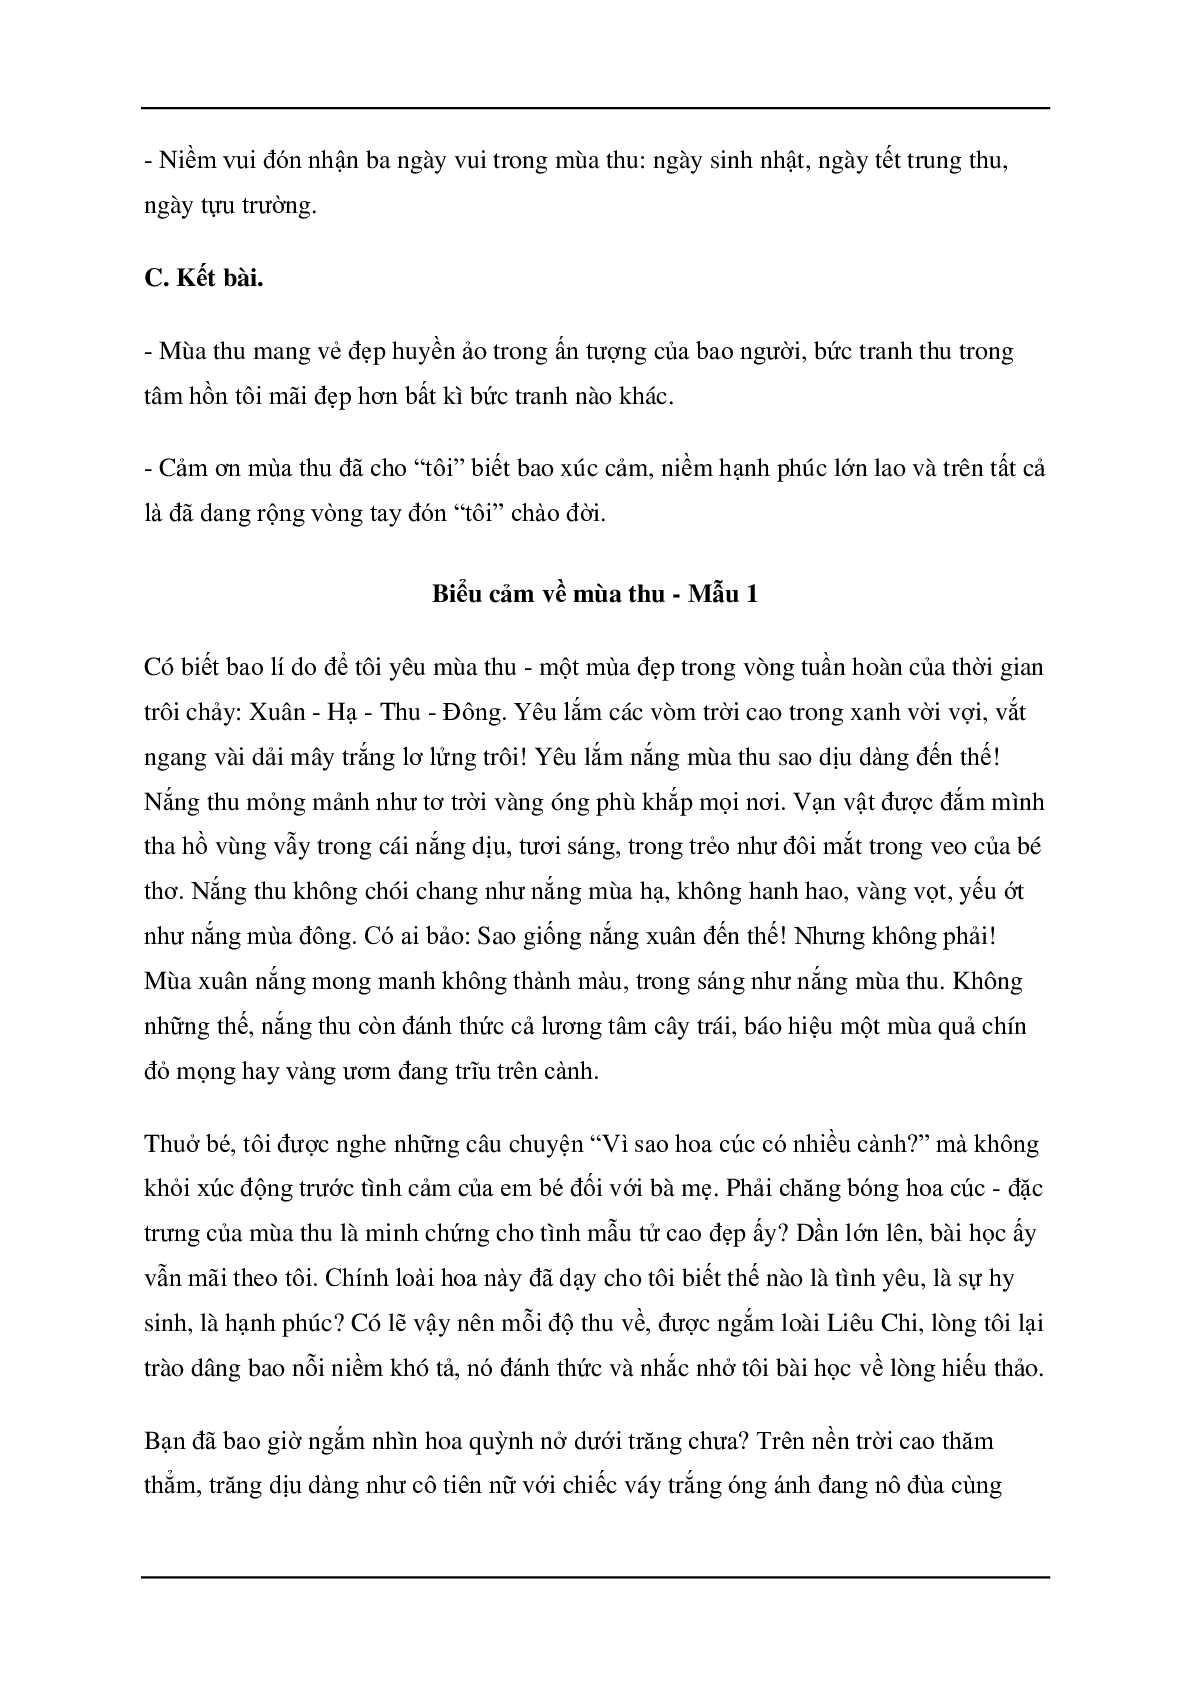 Bài văn mẫu biểu cảm về mùa thu môn Văn lớp 7 ( 12 bài ) (trang 4)